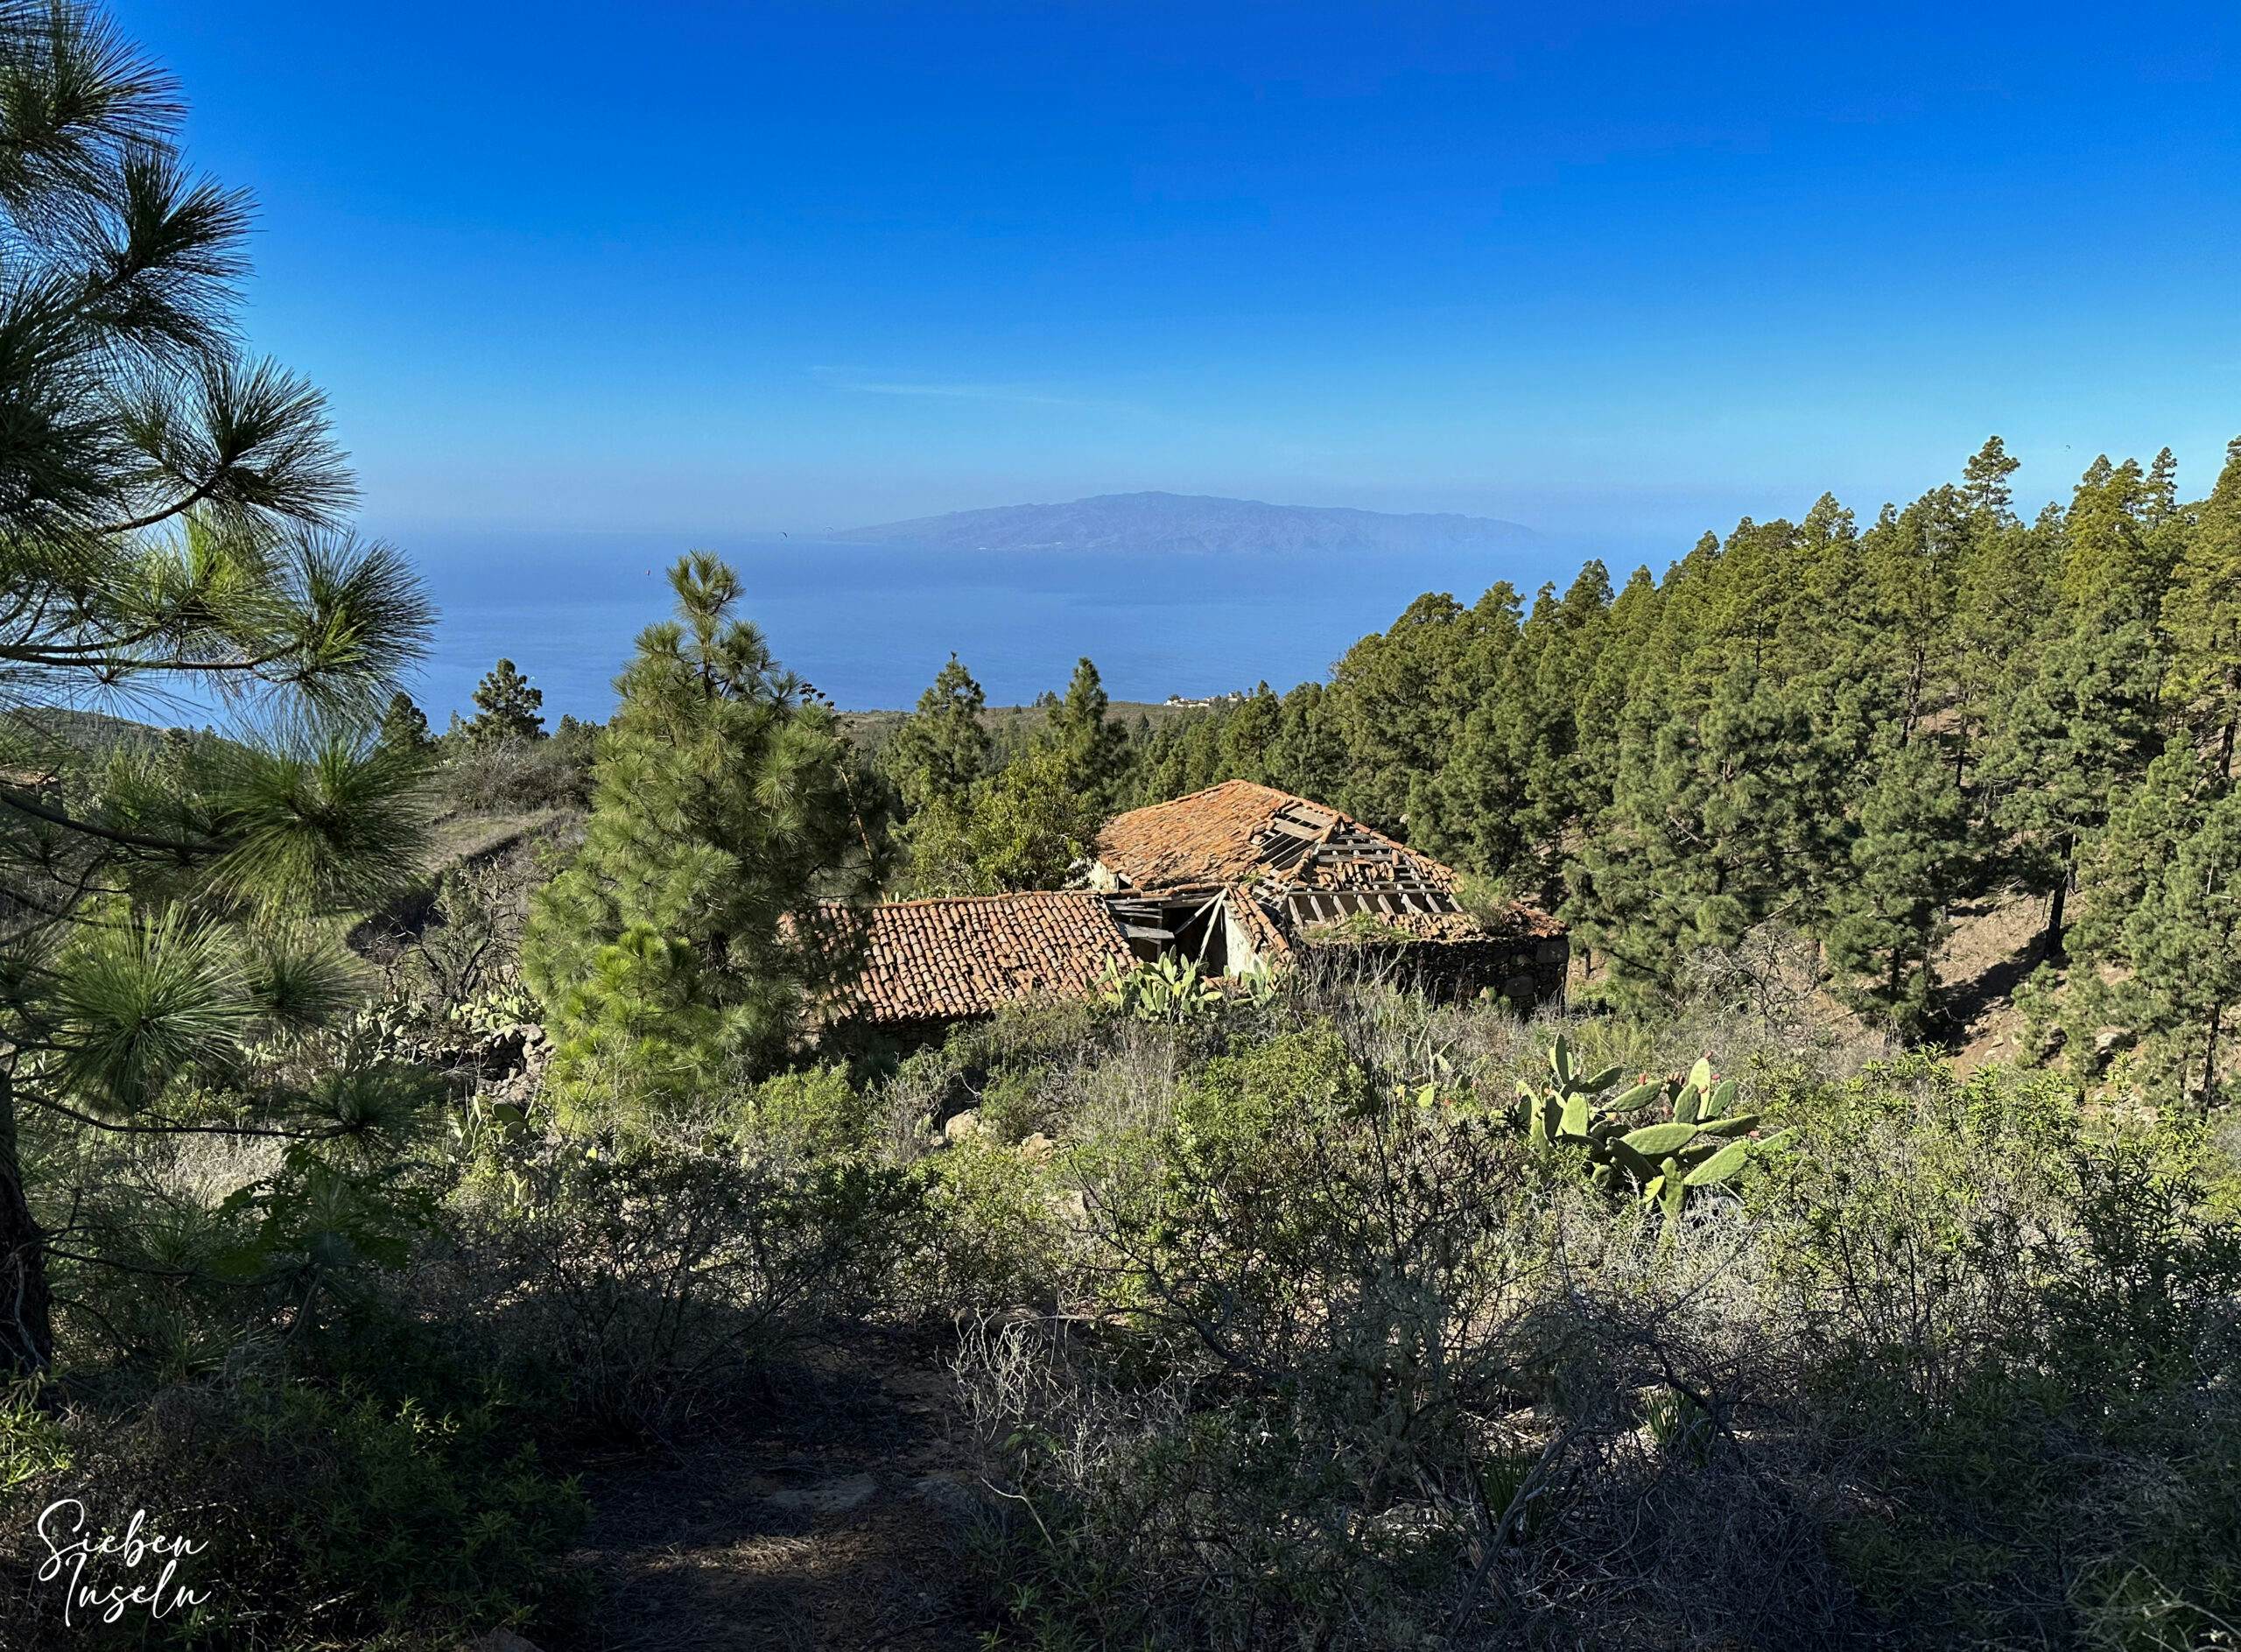 Casas del Aserradero mit der Nachbarinsel La Gomera im Hintergrund